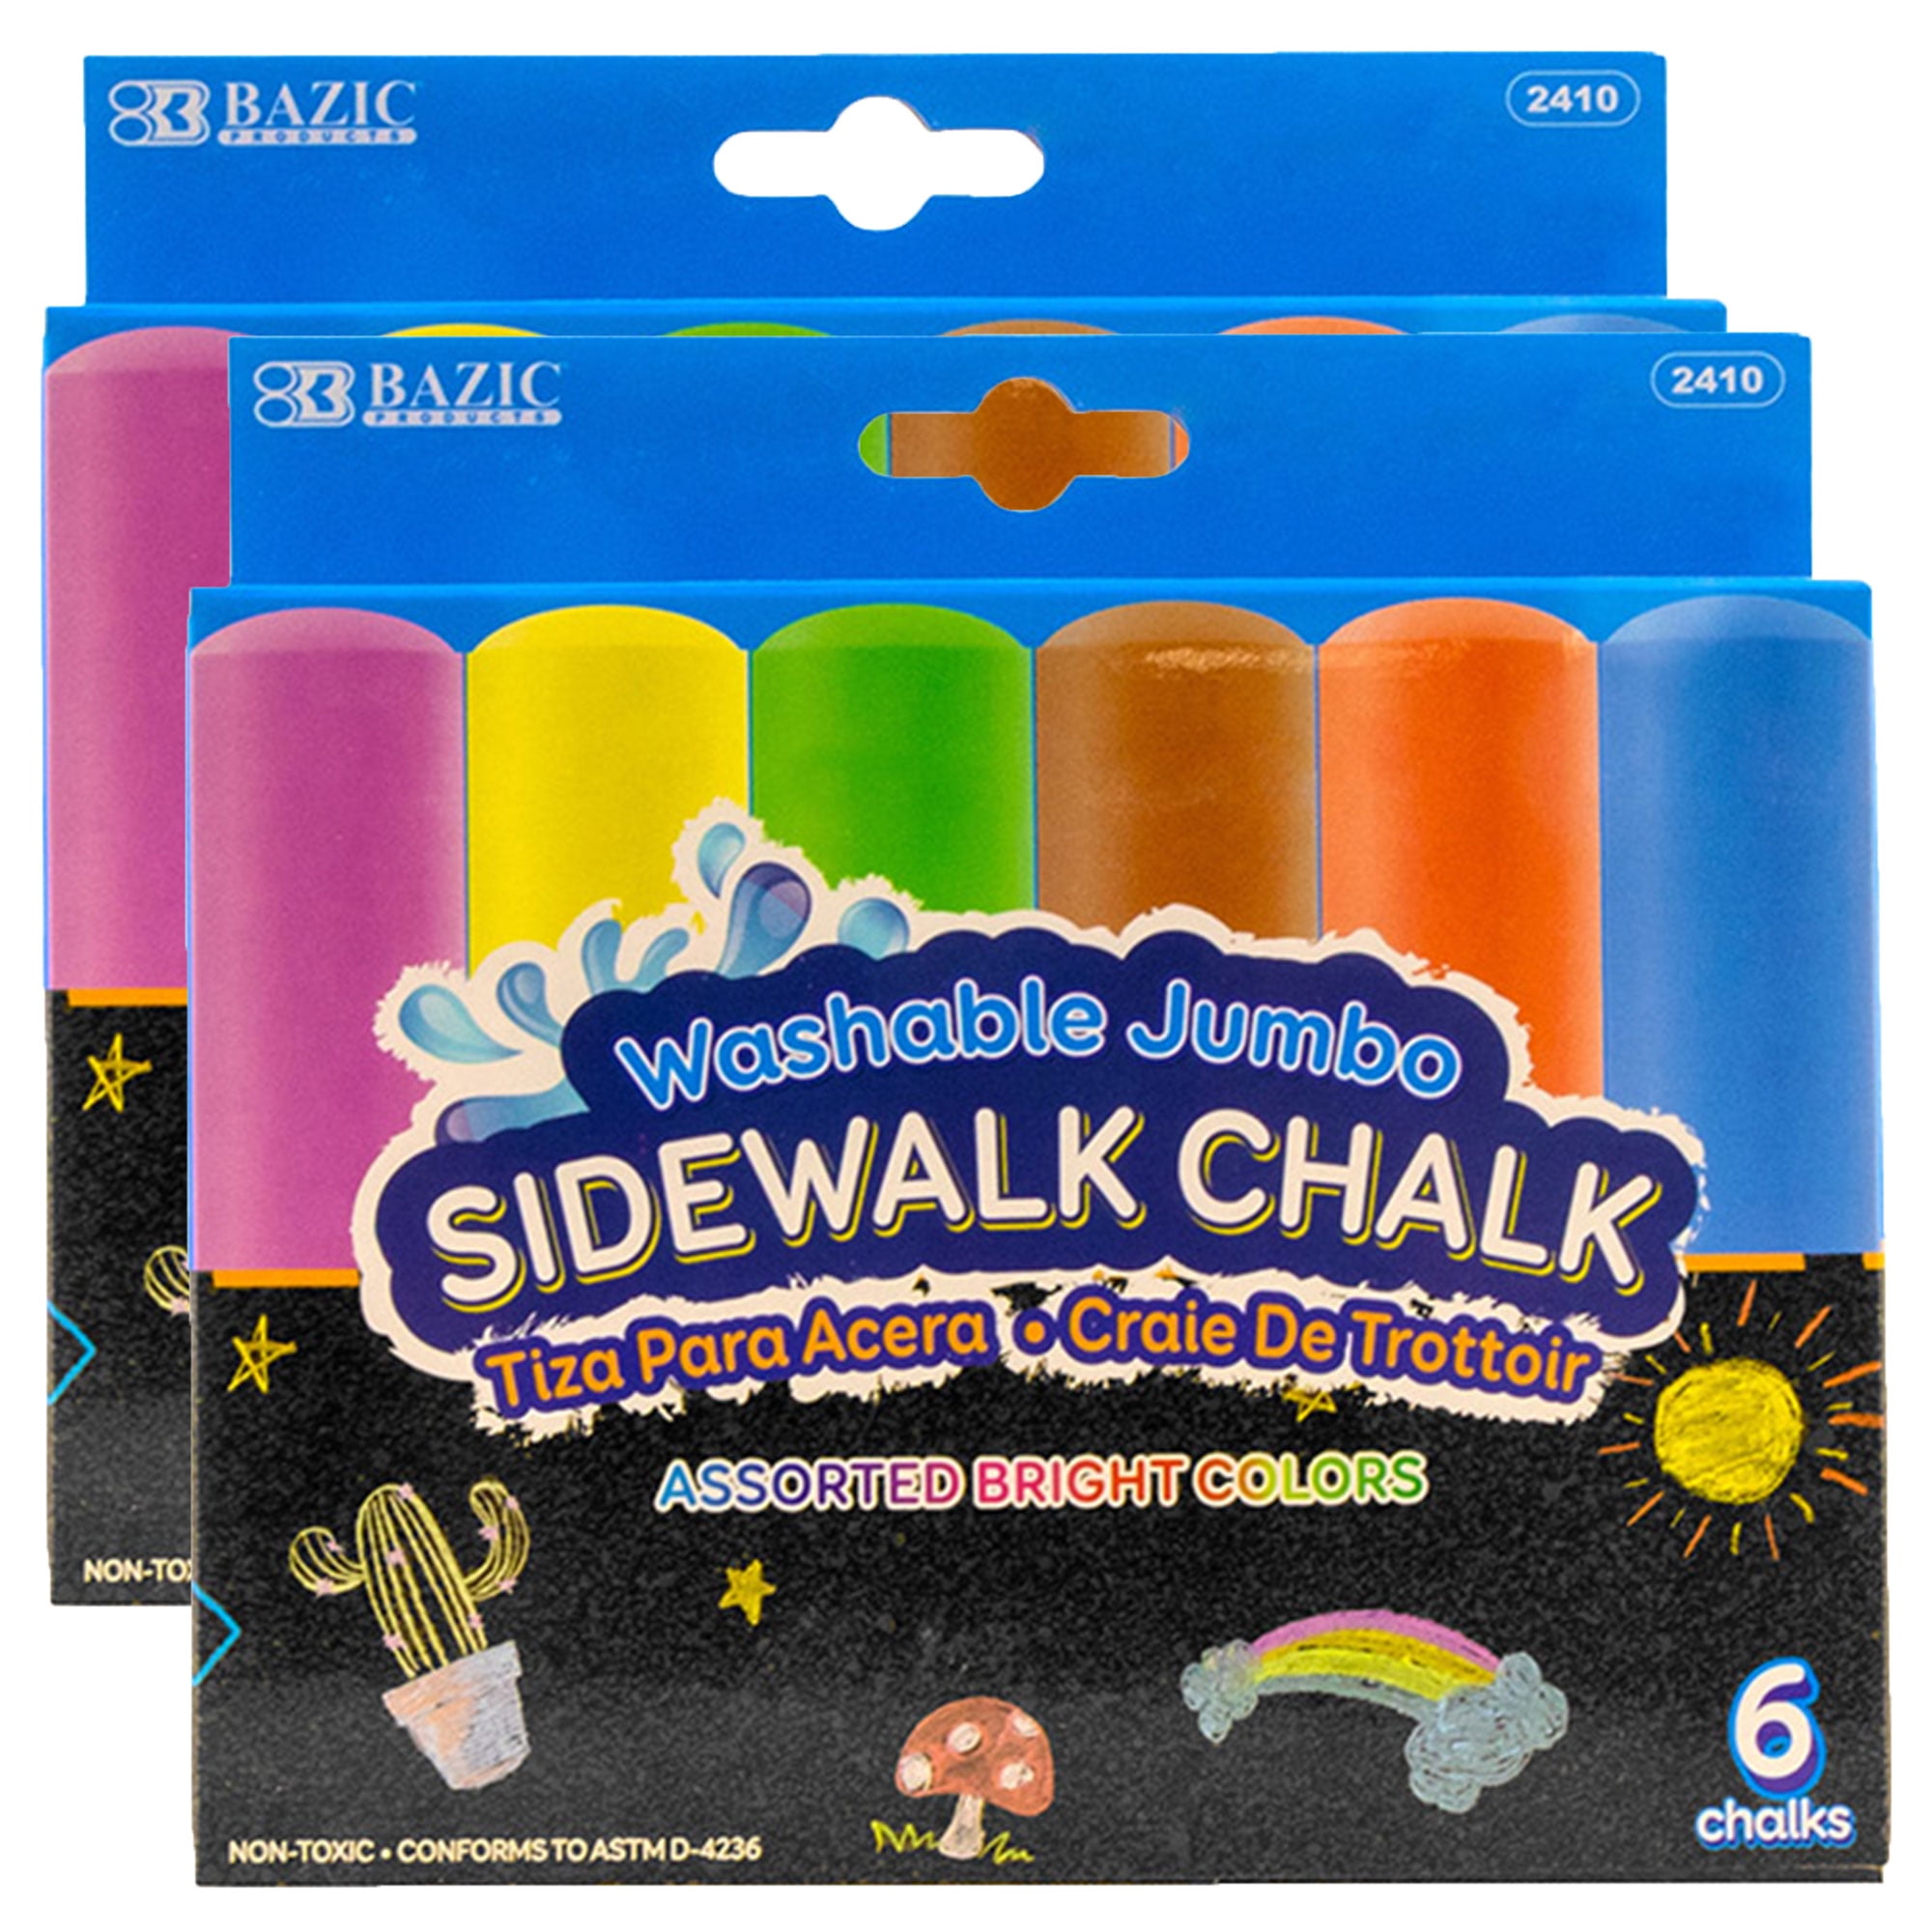 120 Pack Sidewalk Chalk for Kids Bulk Box Non-Toxic Jumbo Colored Washable Sidewalk Chalk for Kids Outdoor Activity